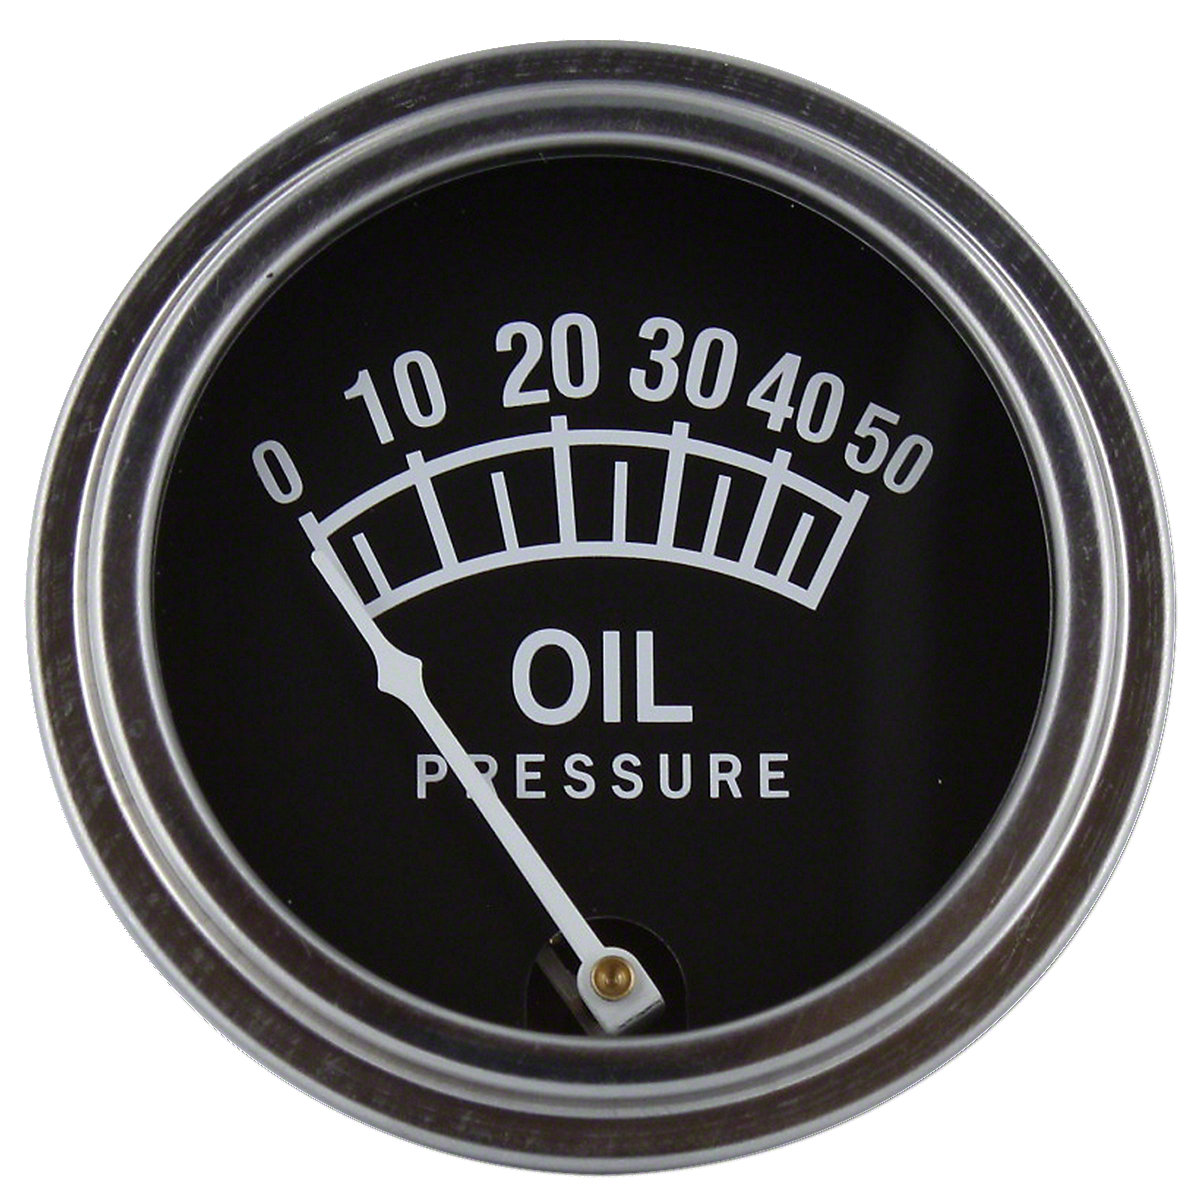 Oil Pressure Gauge 0-50 LBS.